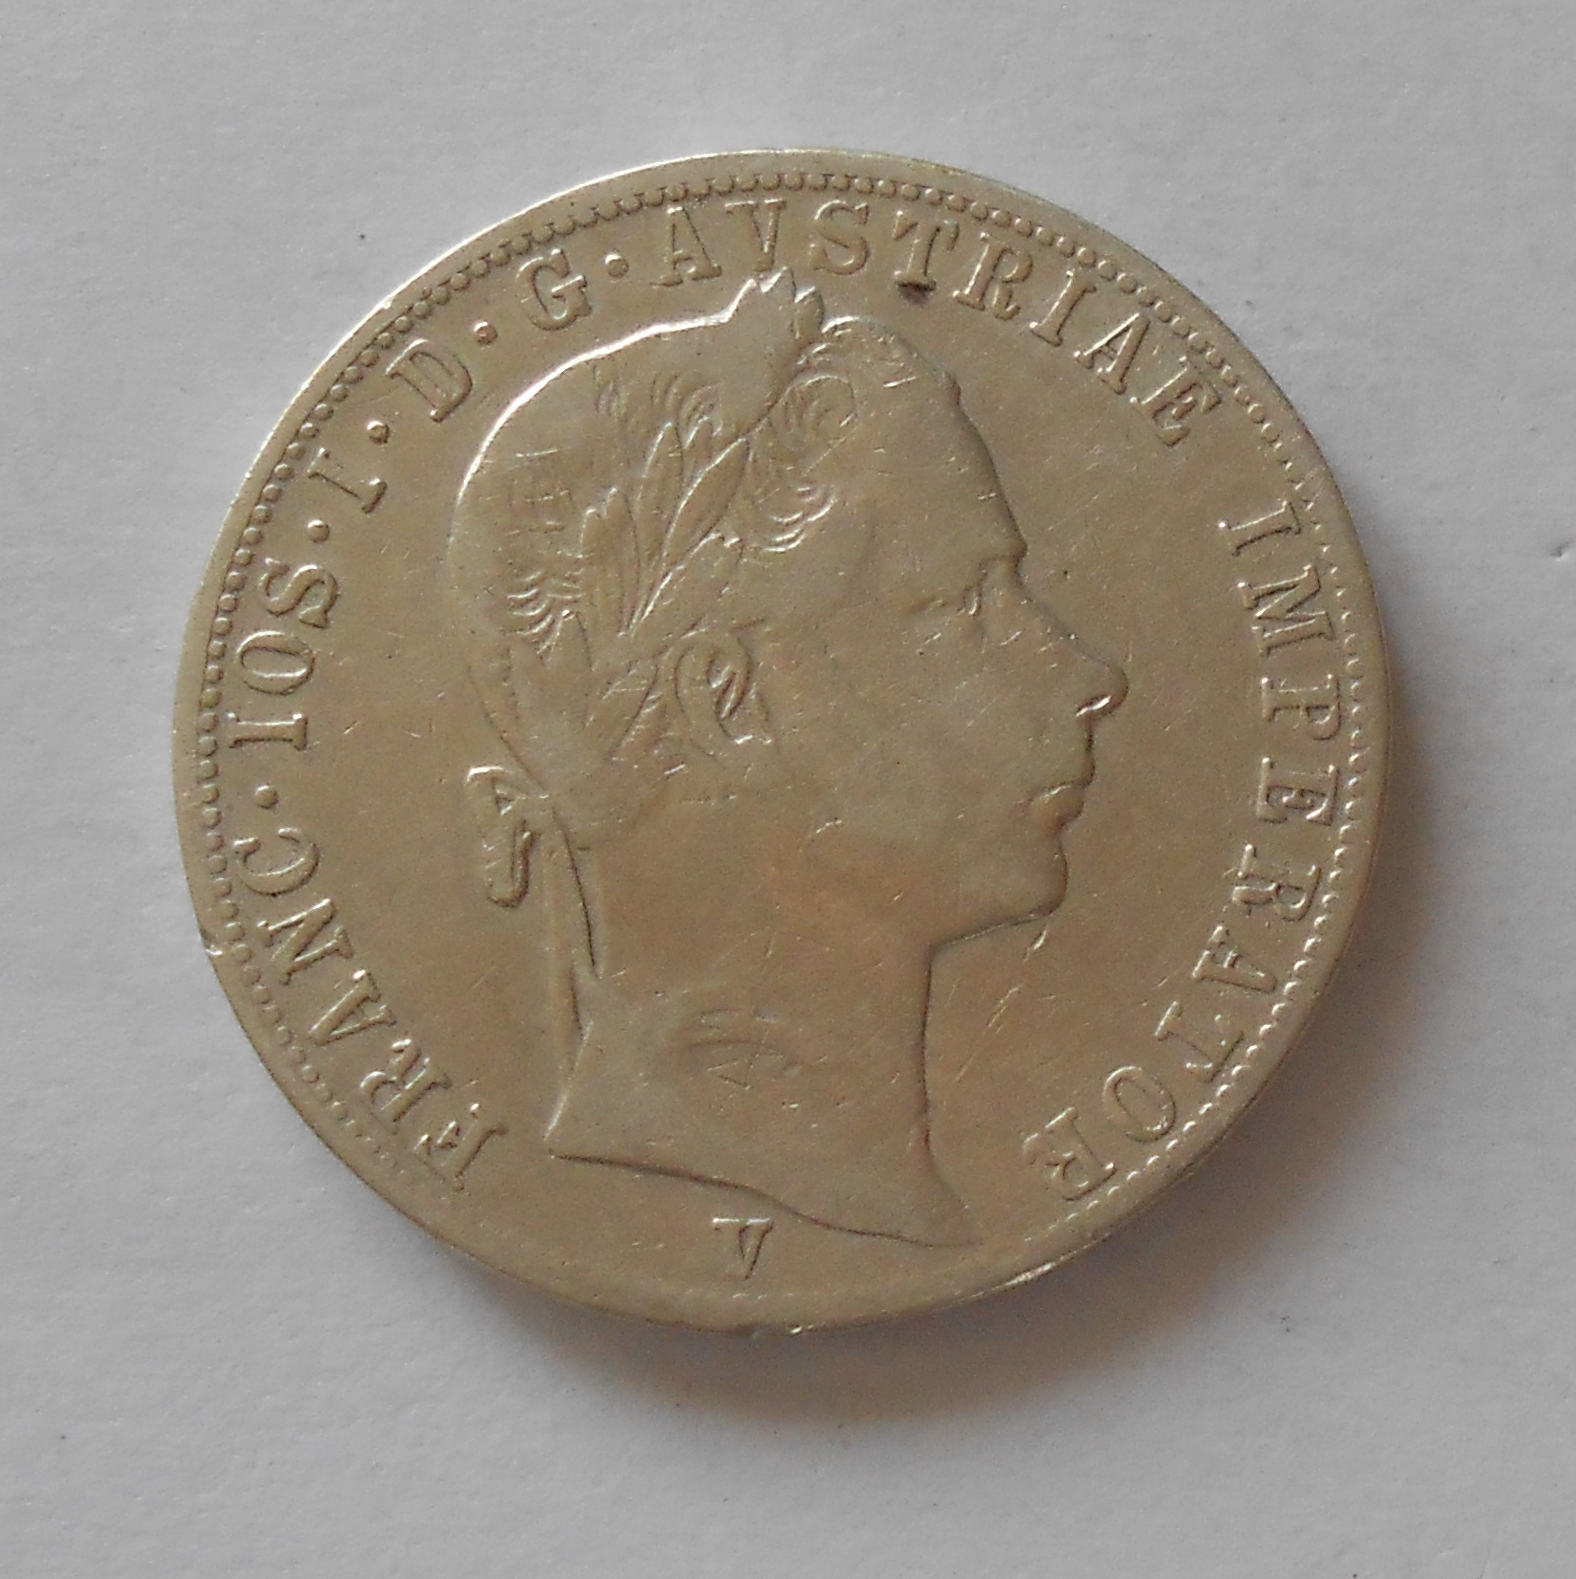 Rakousko 1 Zlatník/Gulden 1859 V